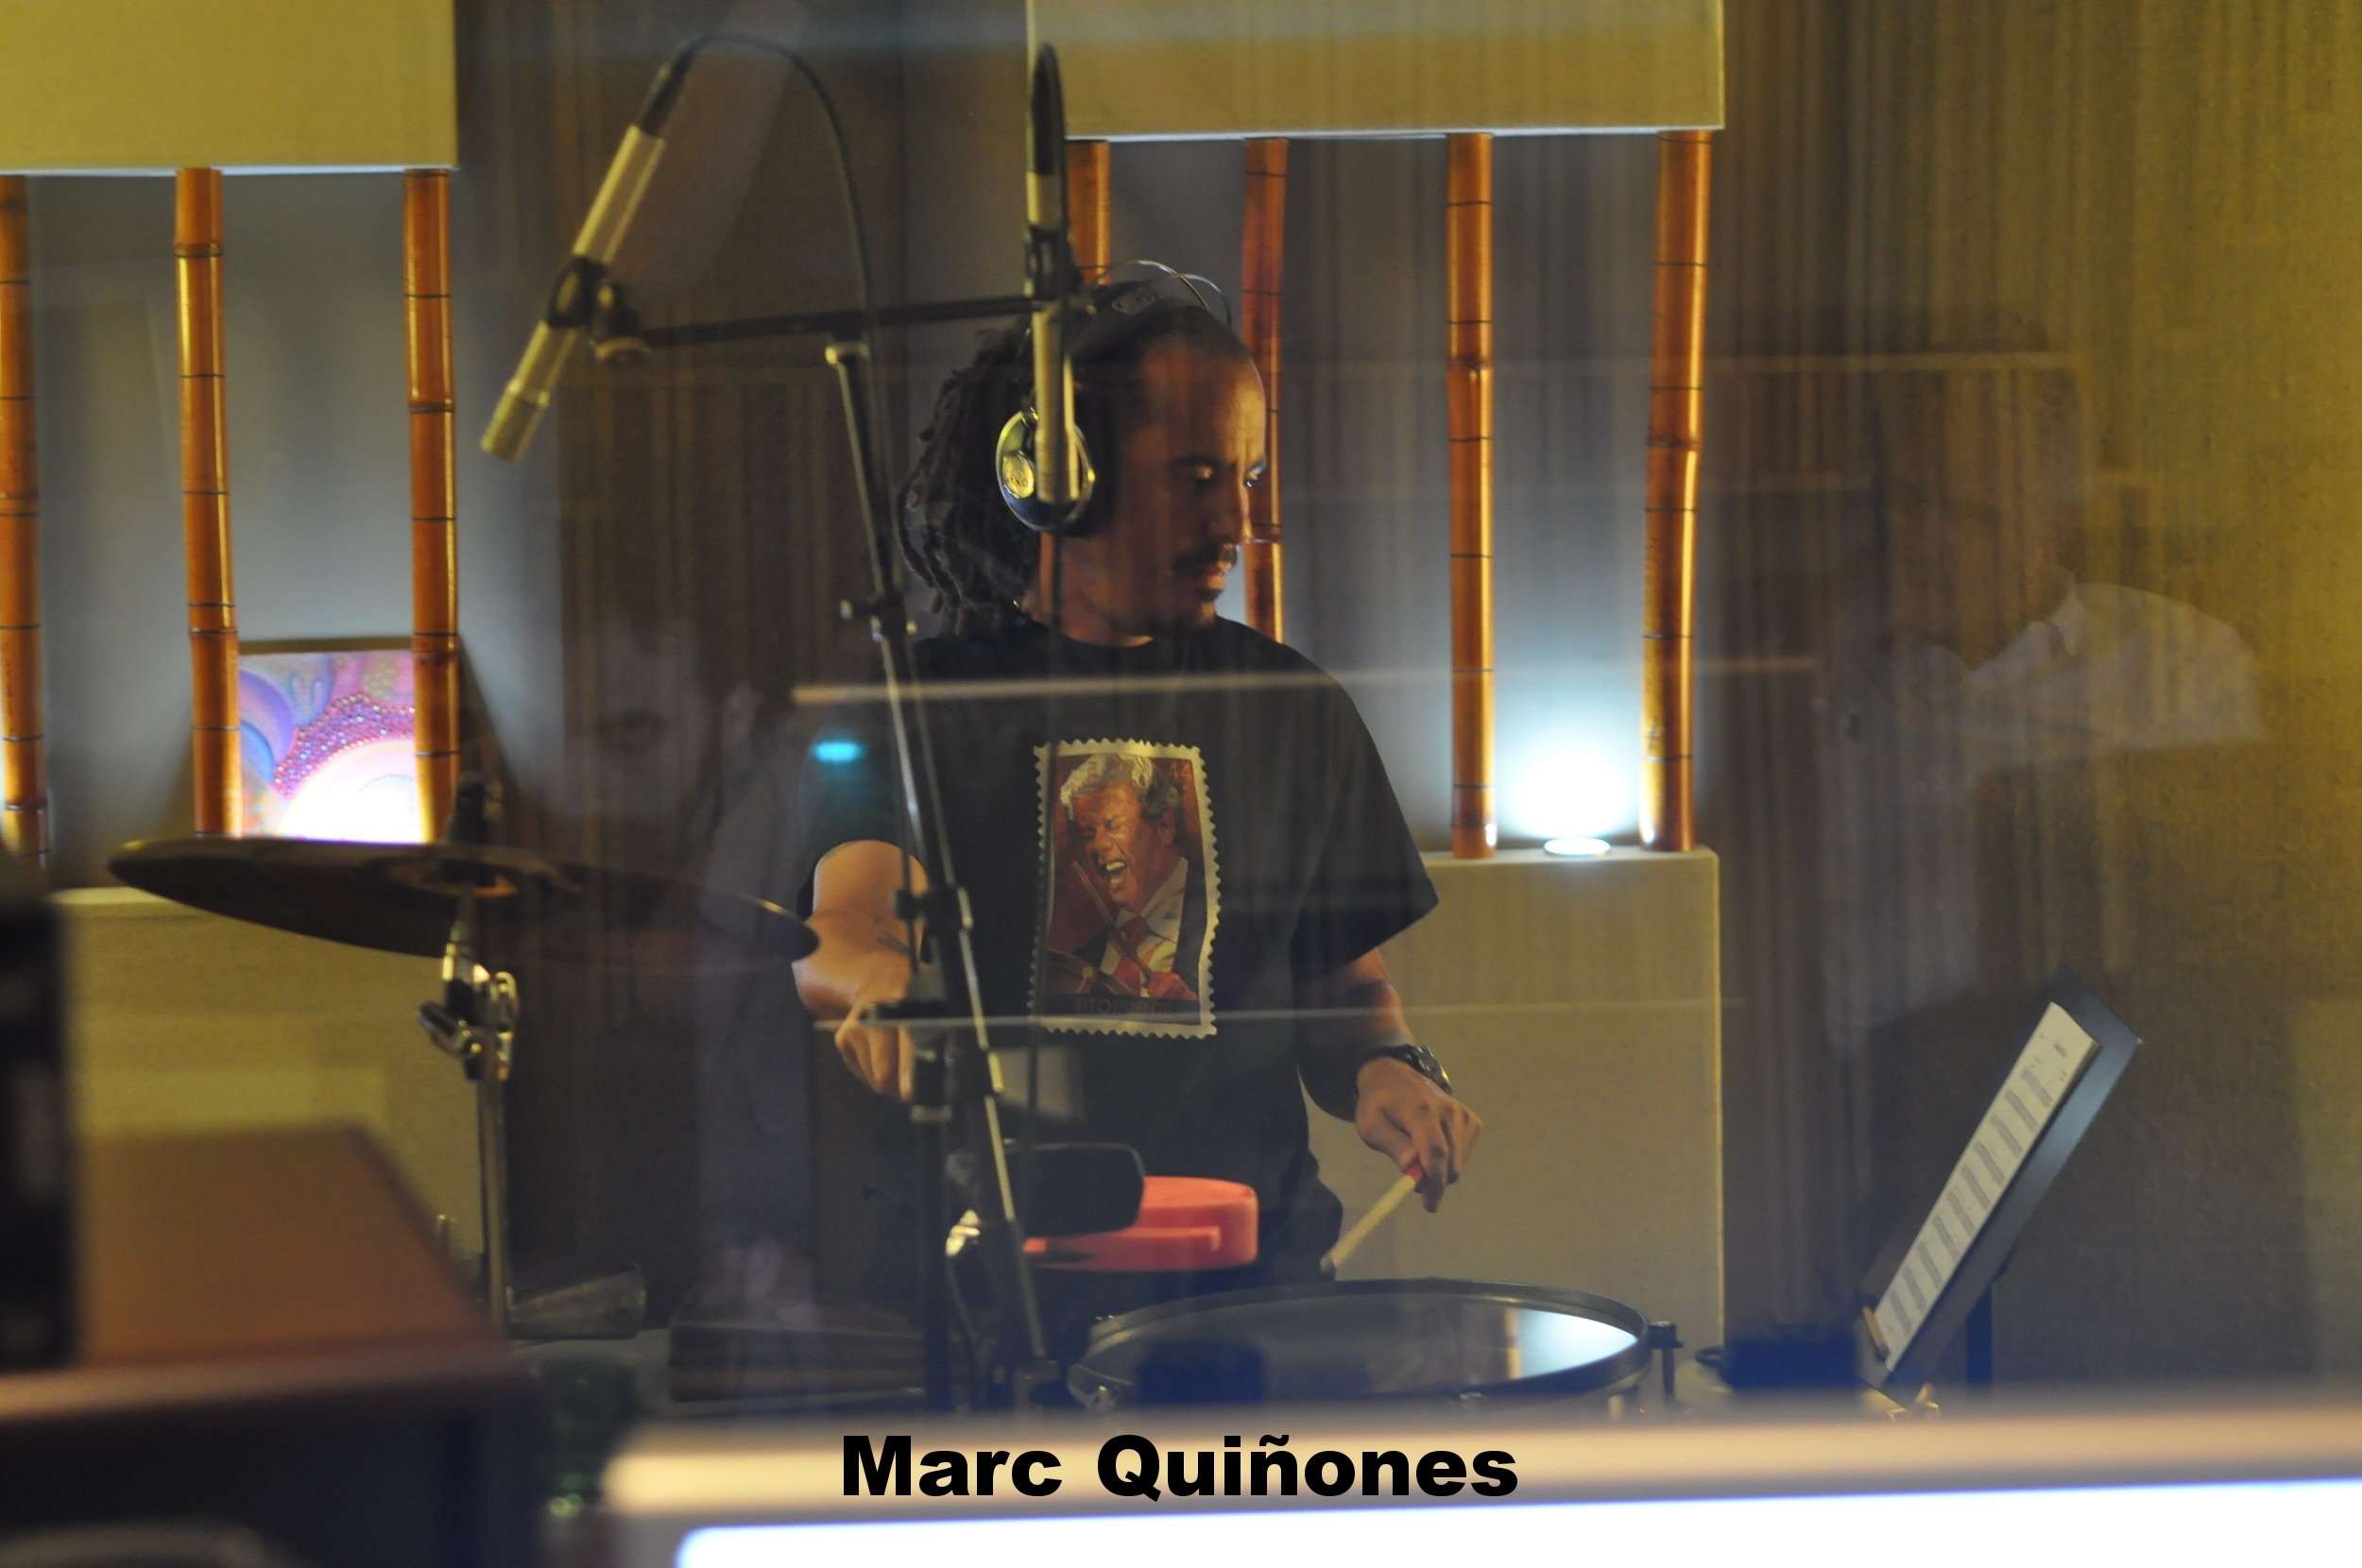 Marc Quiñones